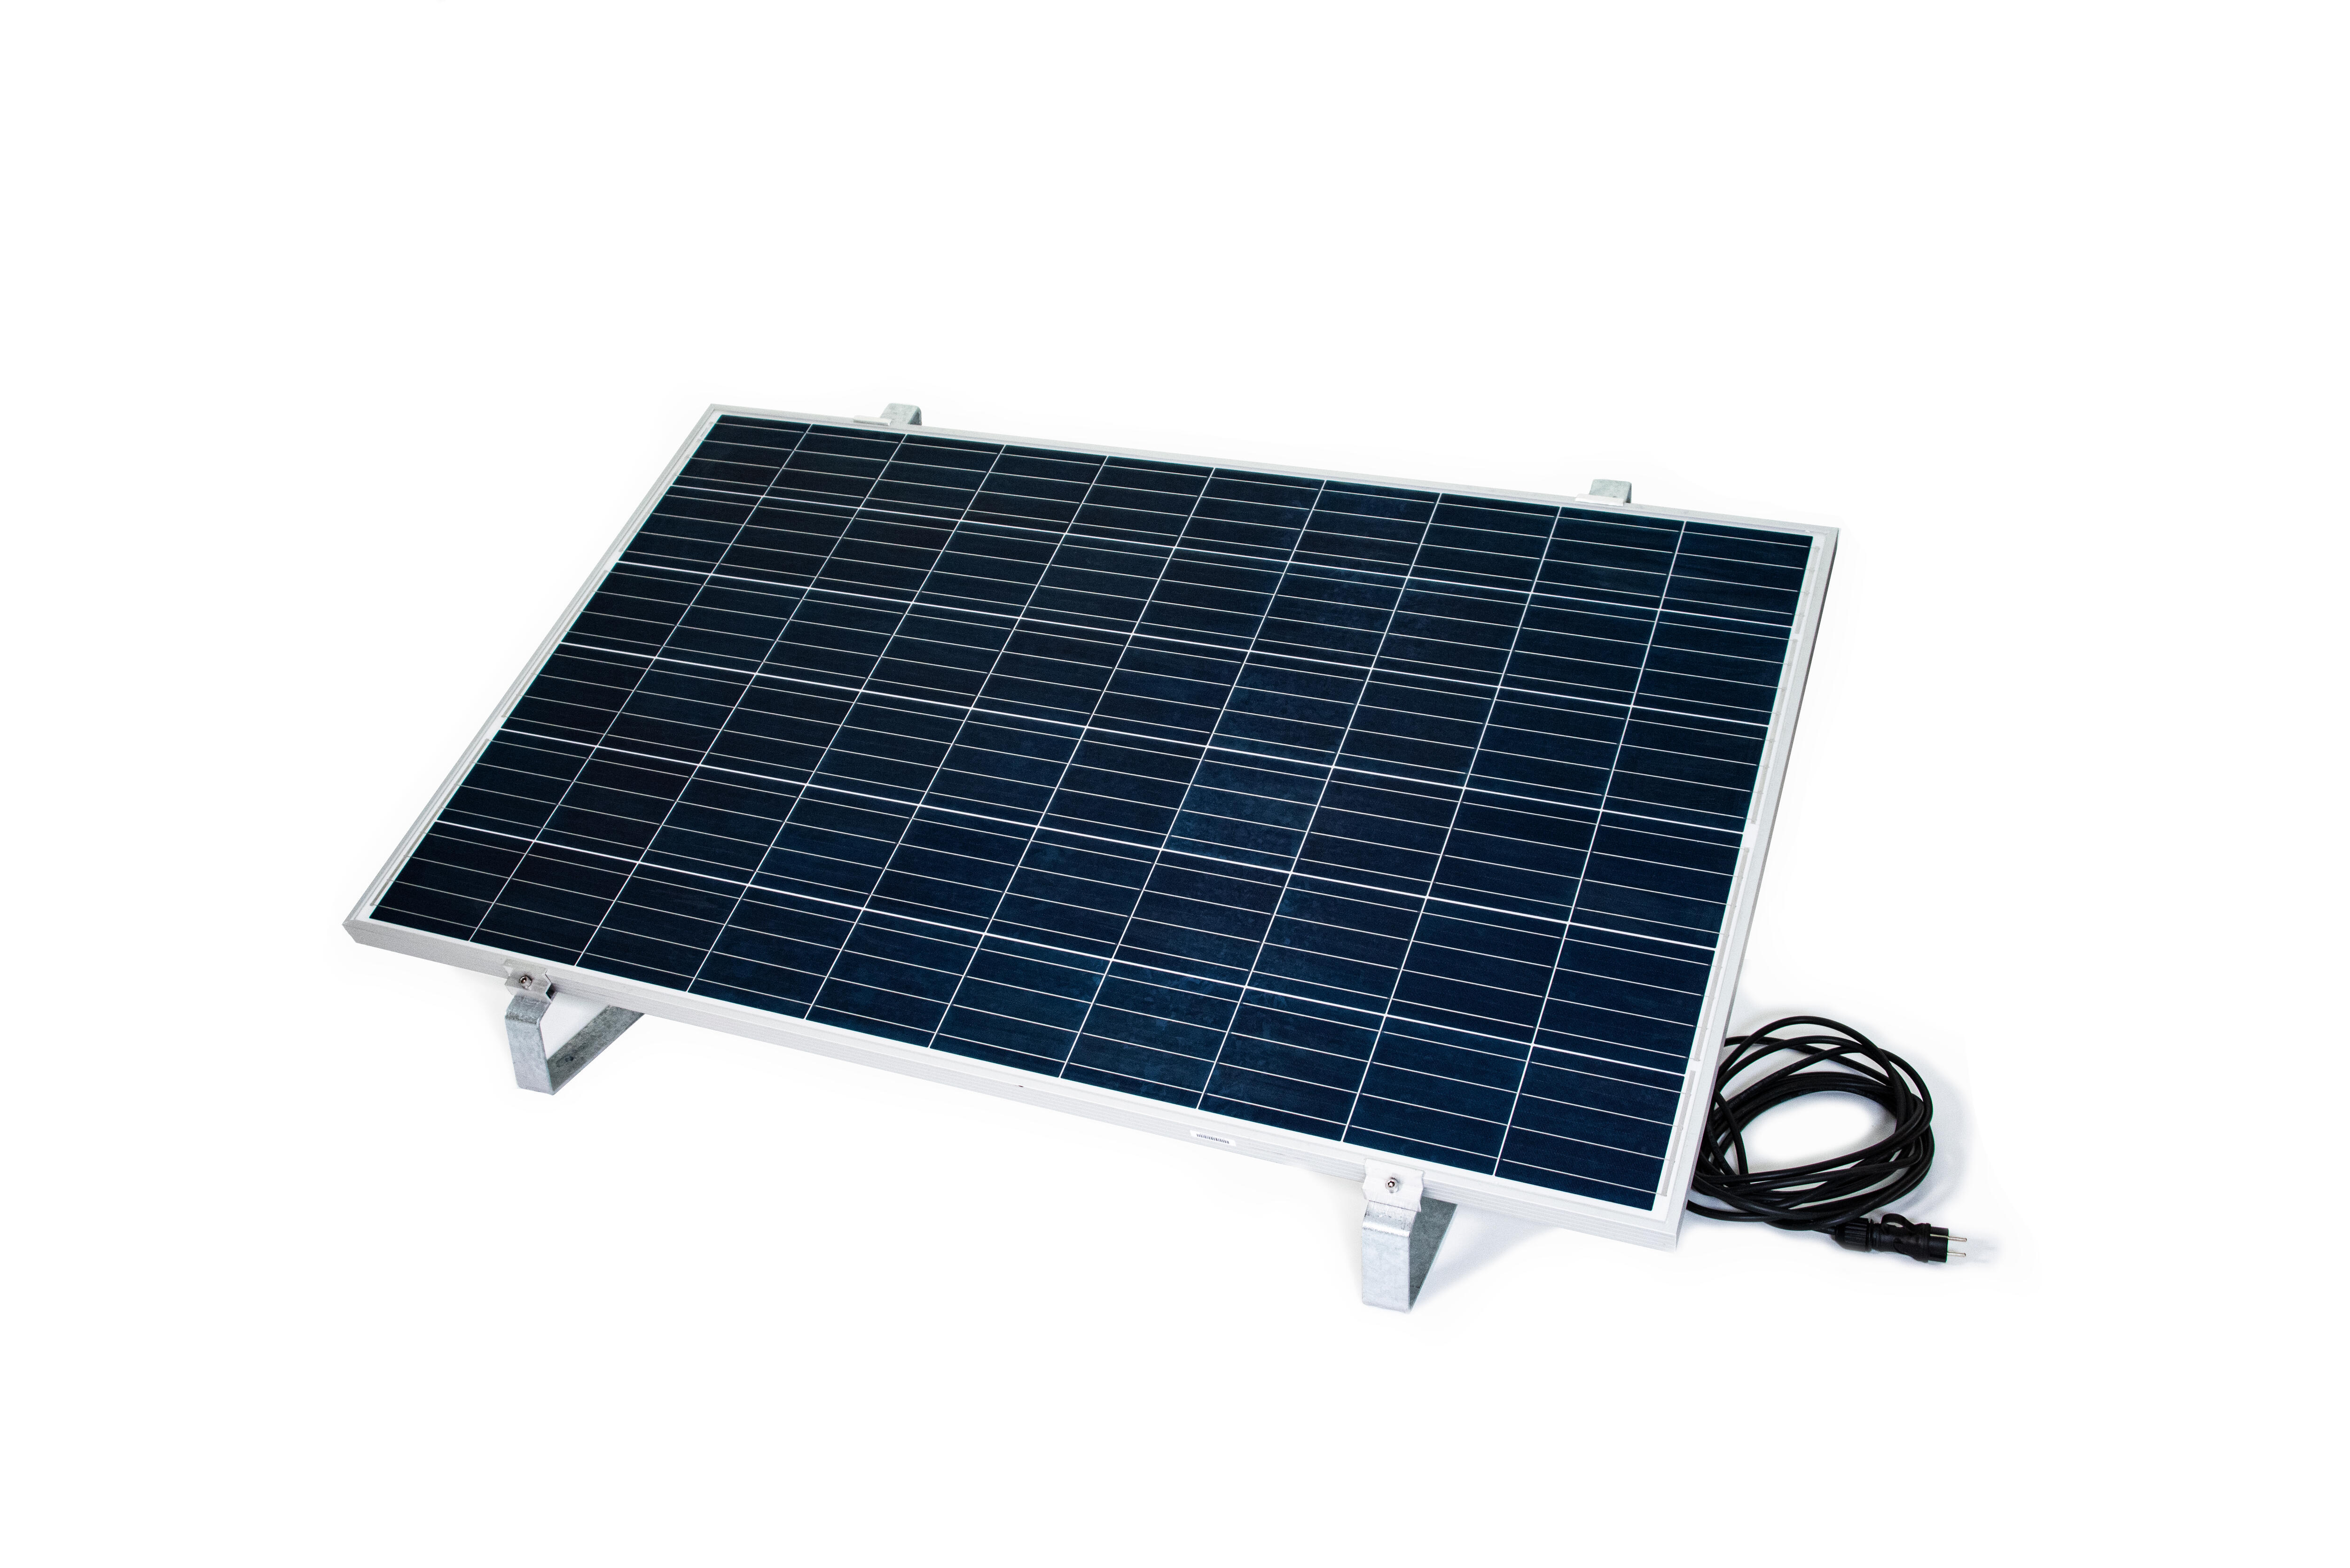 Kit solaire 50W - Balcon - Nautisme - Uniteck